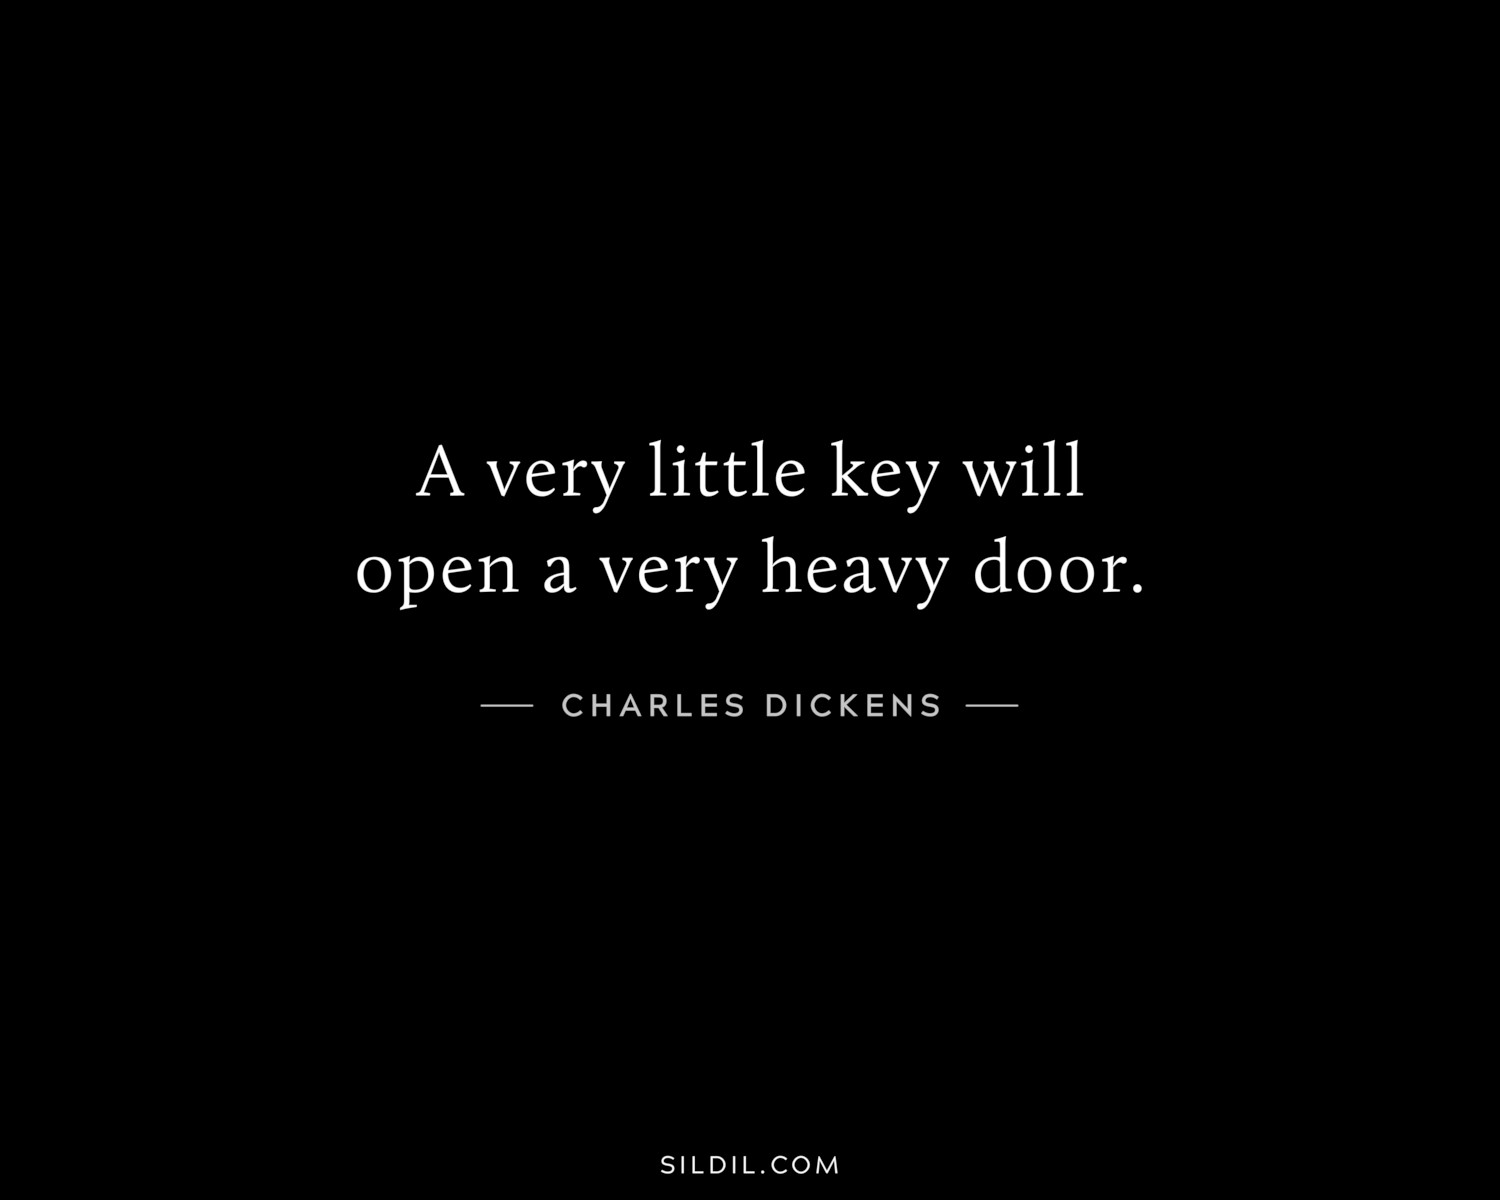 A very little key will open a very heavy door.